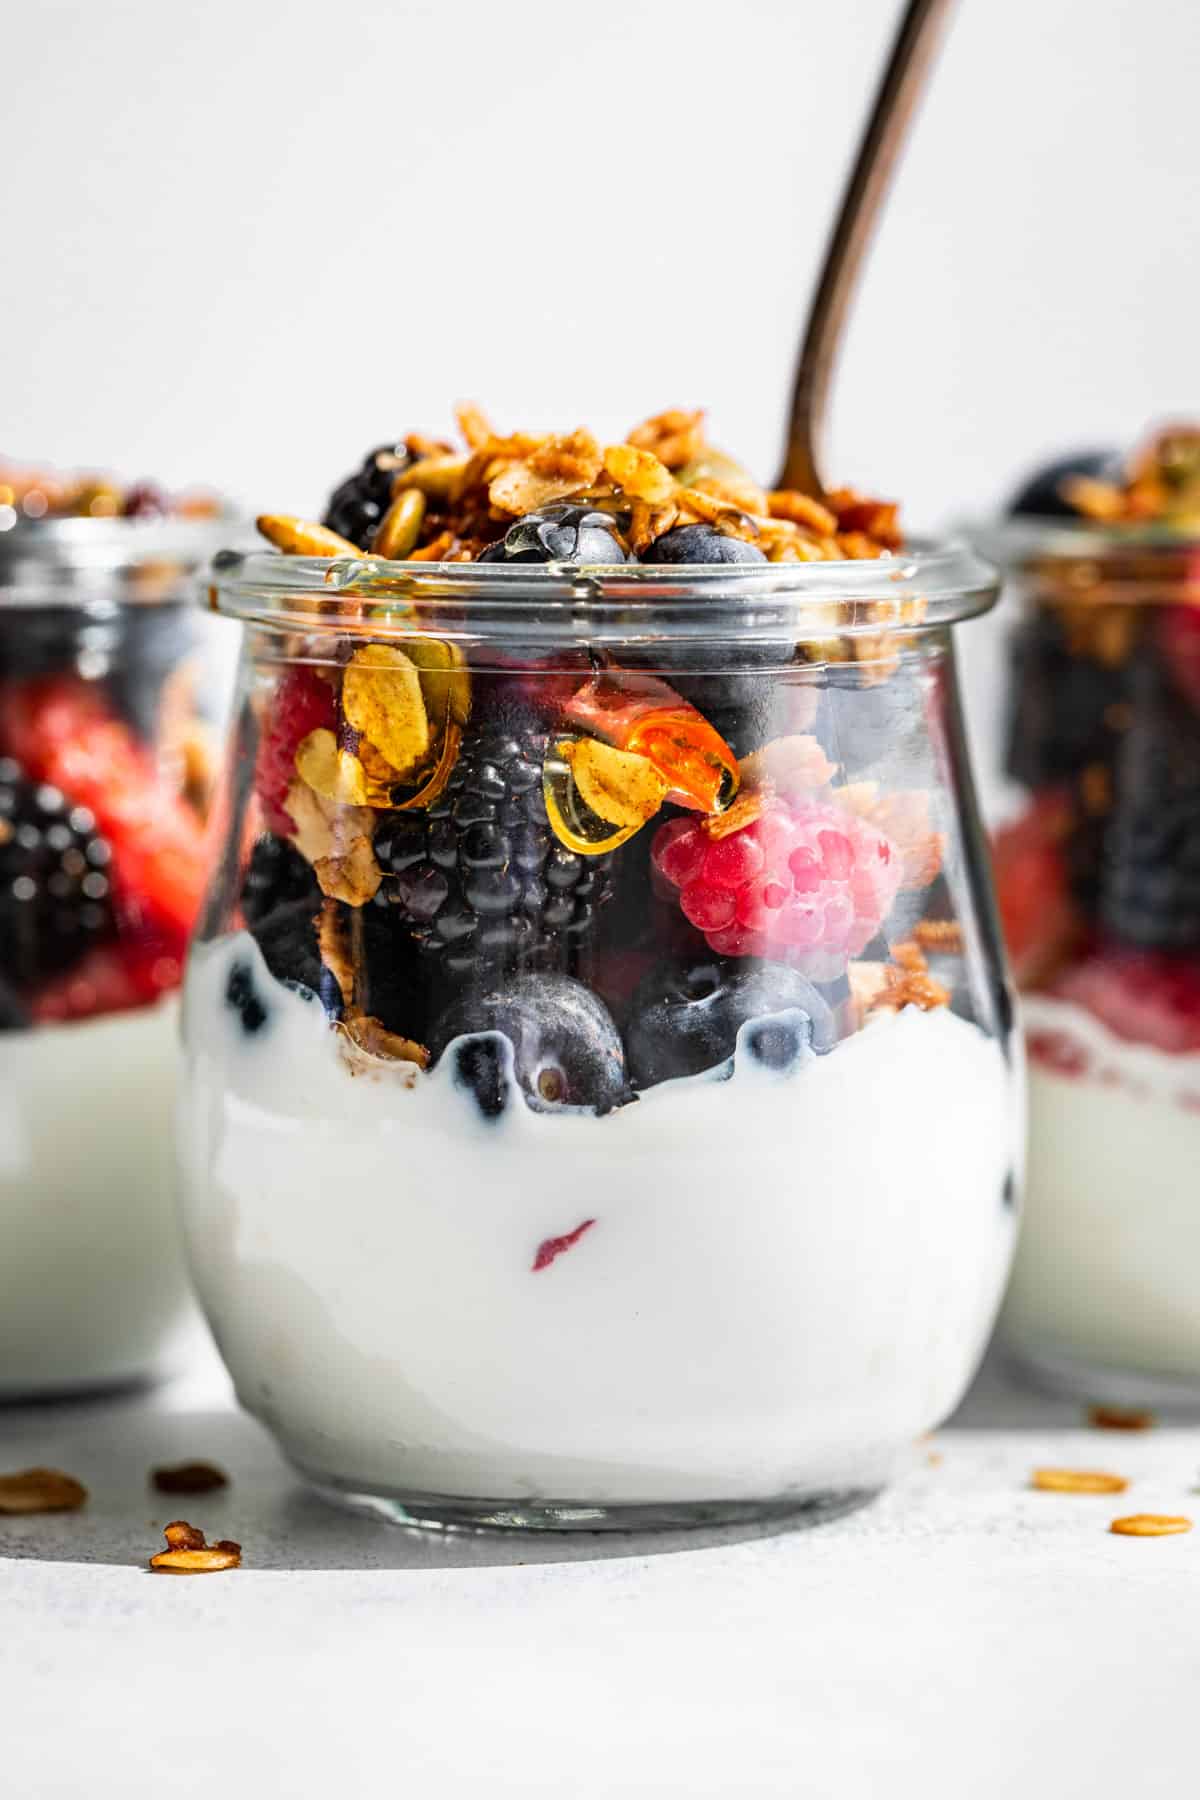 Yogurt, fresh berries, and granola in a clear glass jar.